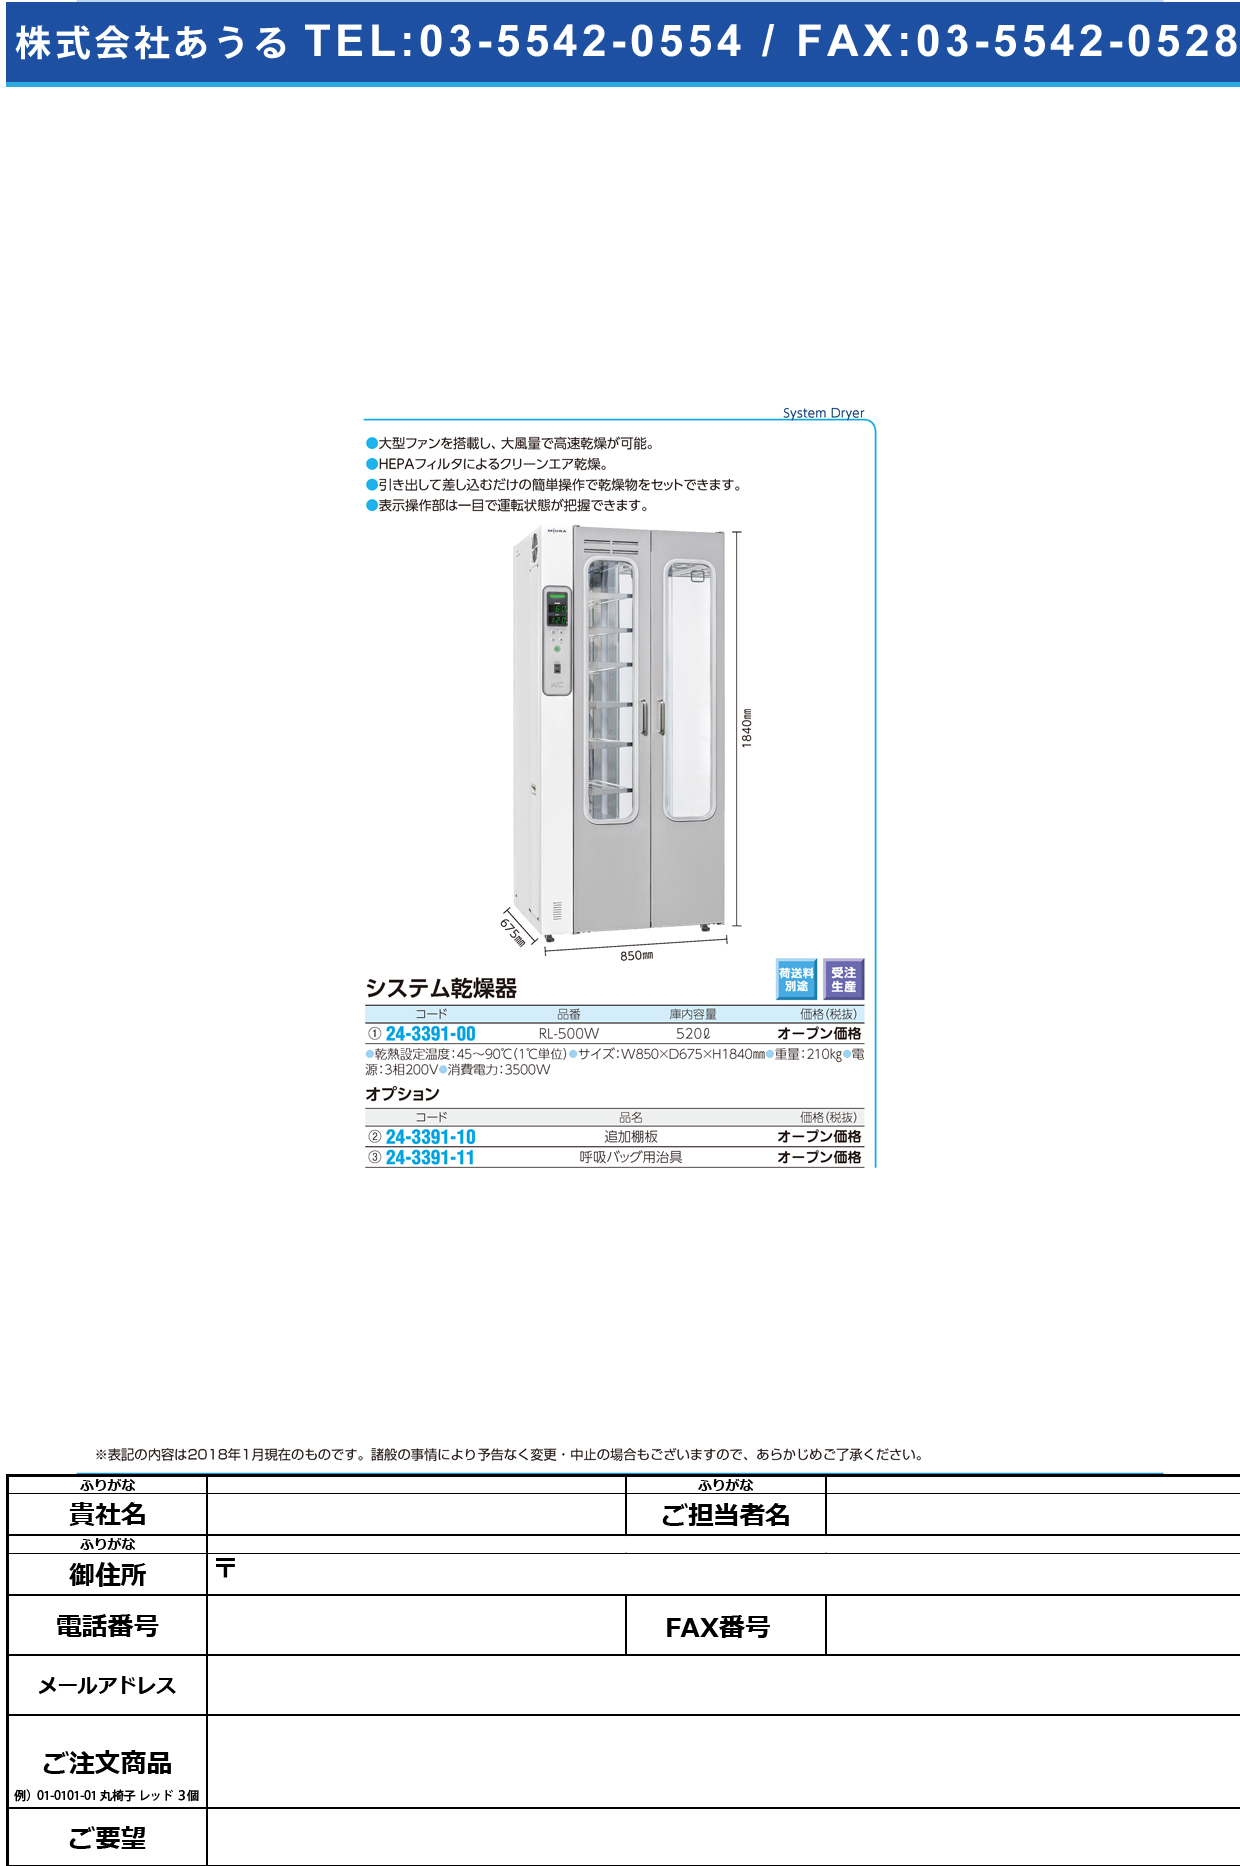 (24-3391-11)システム乾燥器用呼吸バッグ用治具  ｼｽﾃﾑｶﾝｿｳｷｺｷｭｳﾊﾞｯｸﾞｼﾞ【1個単位】【2019年カタログ商品】